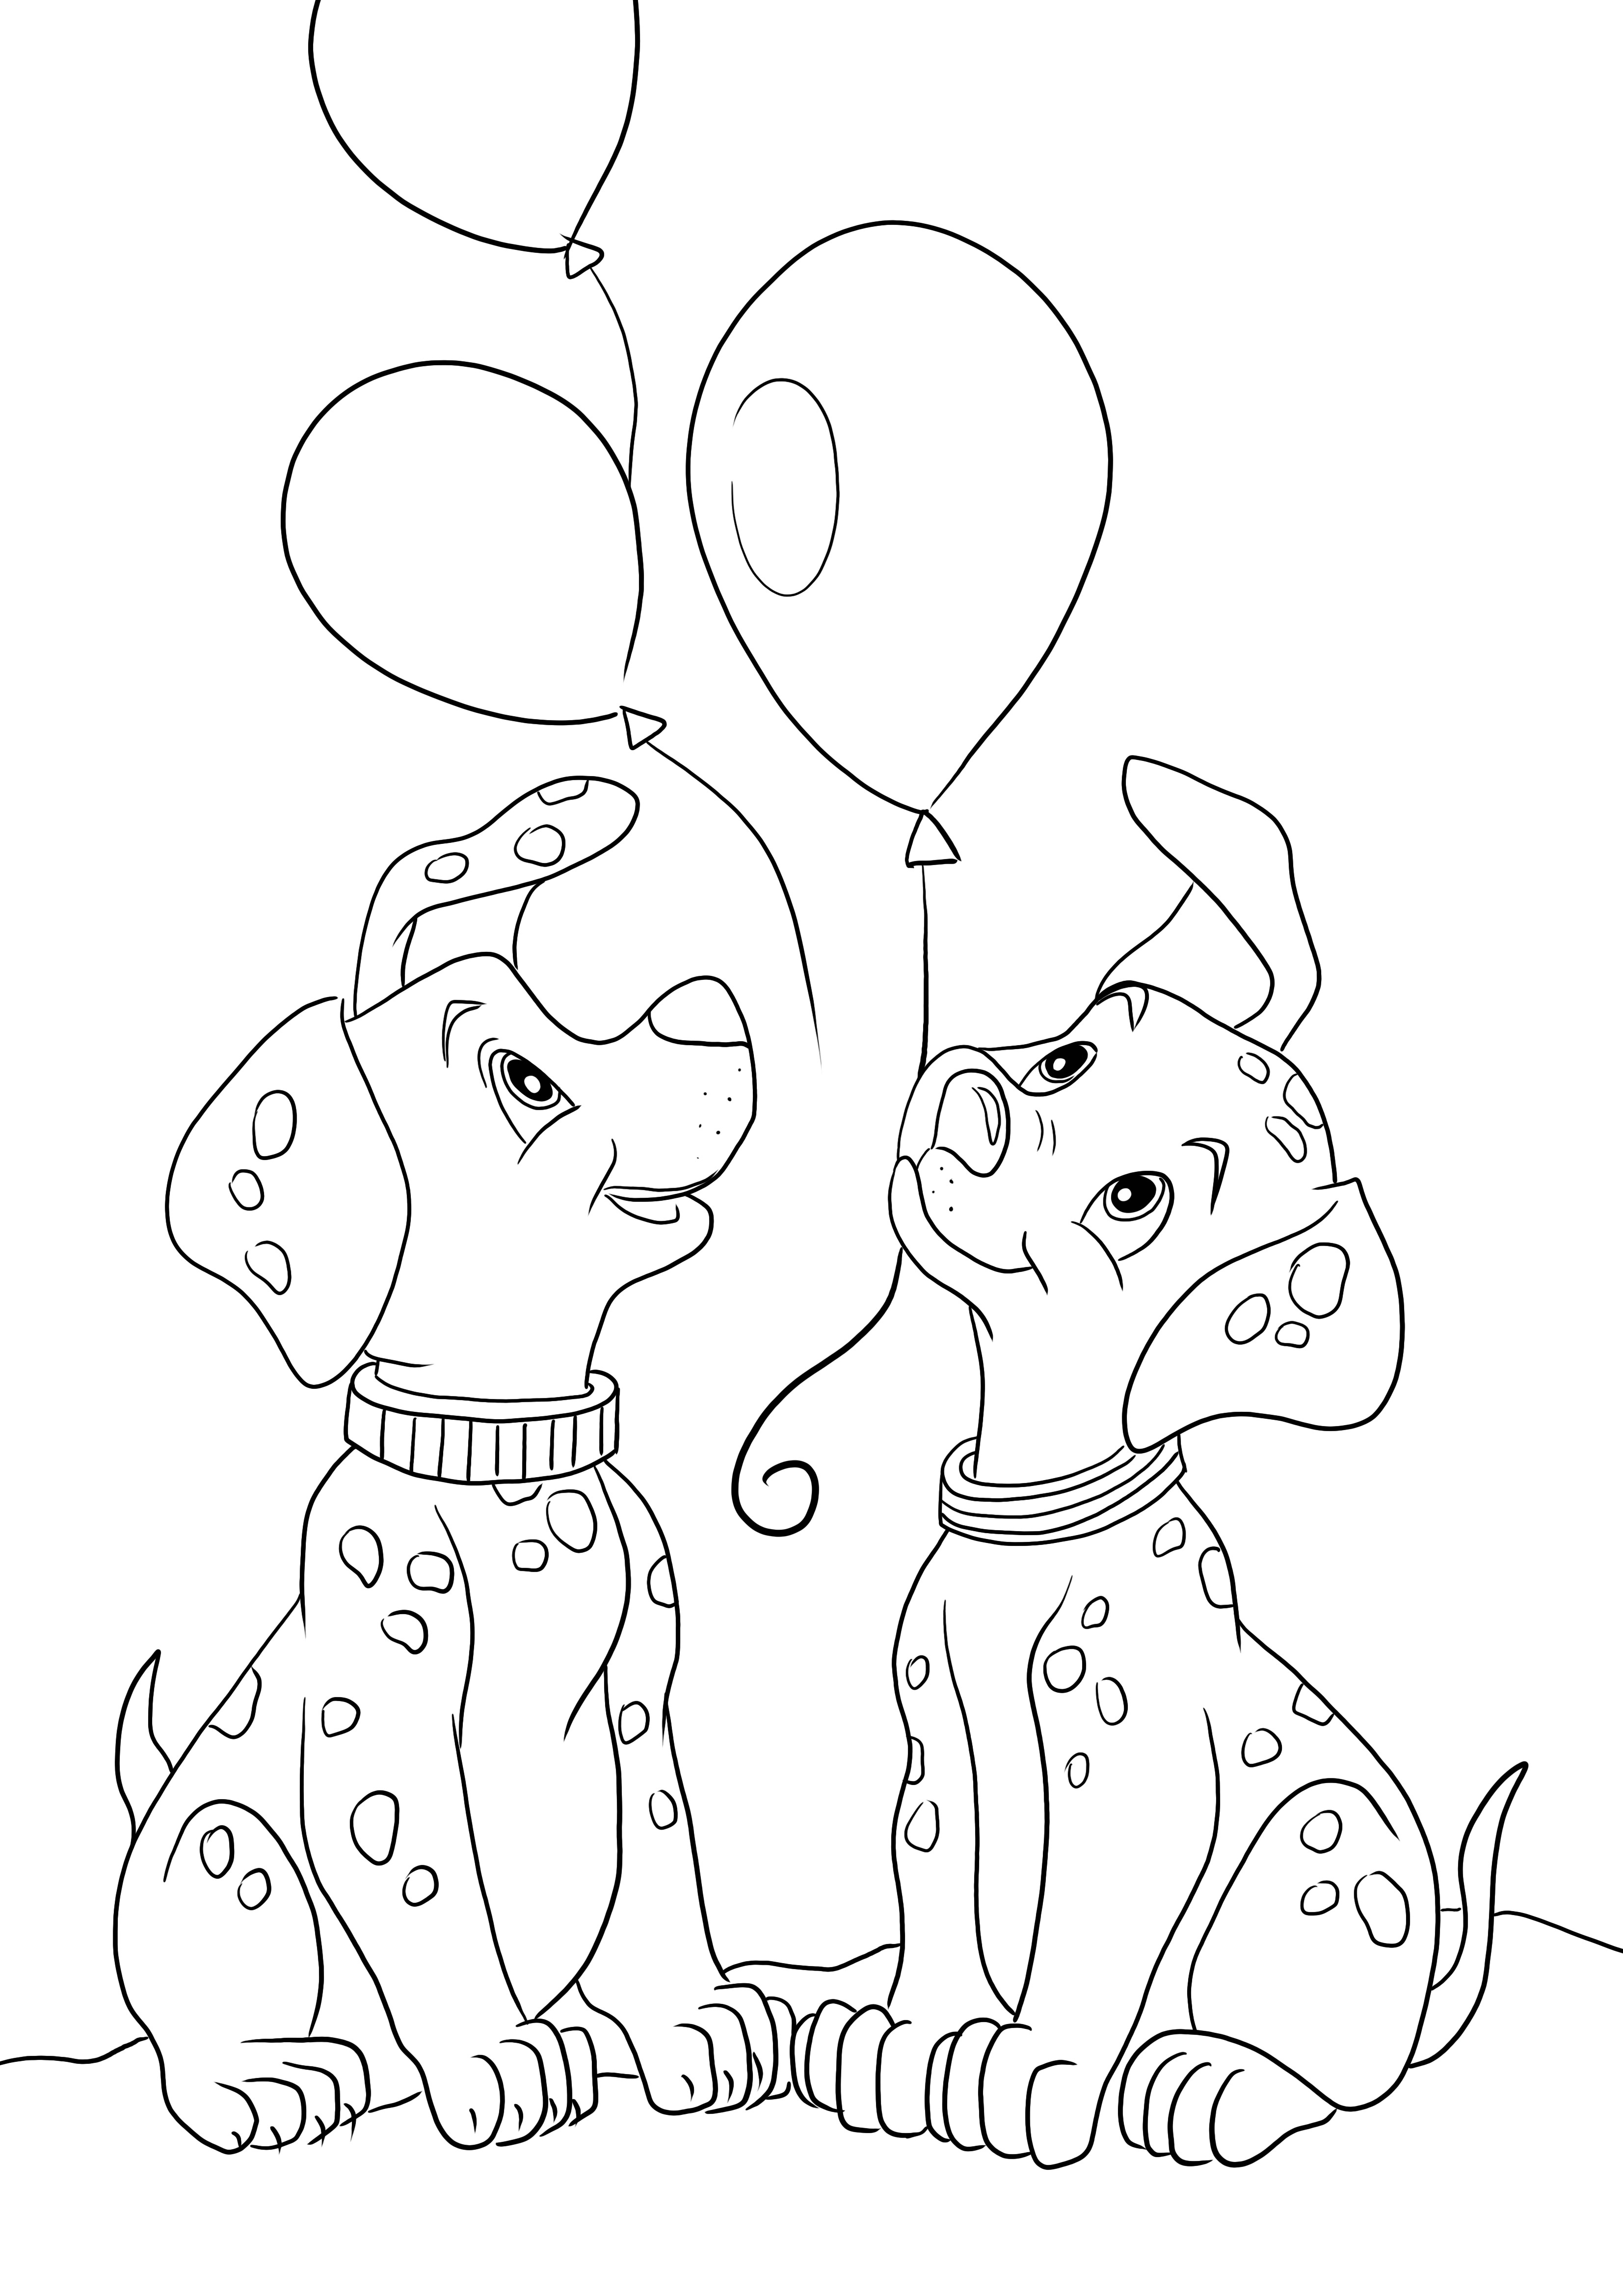 パッチとローリー ダルメシアンの子犬と風船を無料で印刷して簡単に着色できるページ